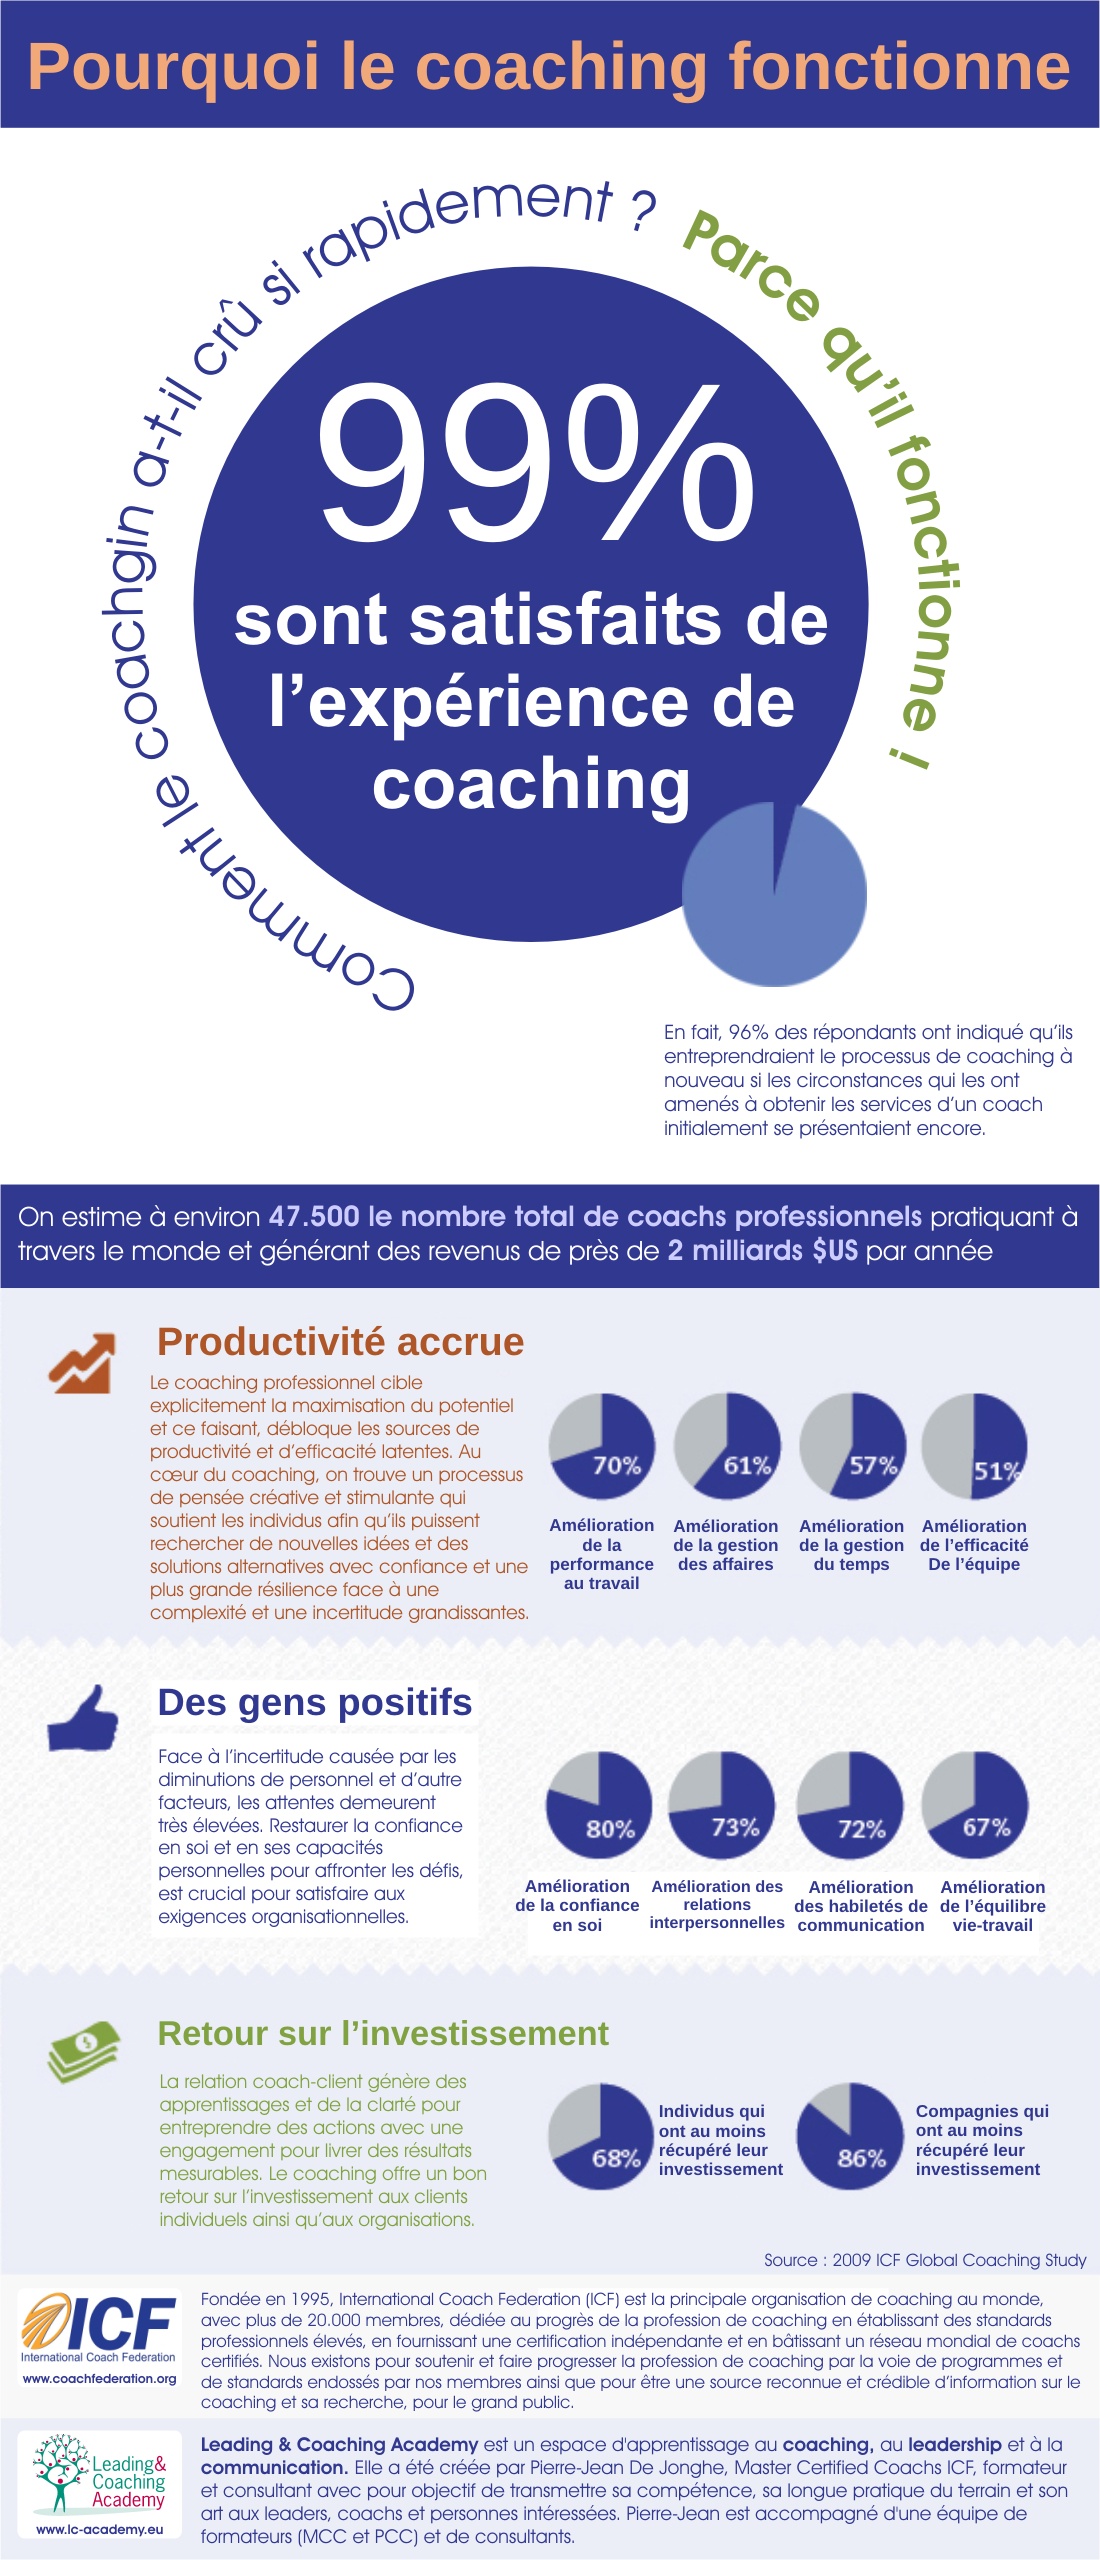 Pourquoi le coaching fonctionne